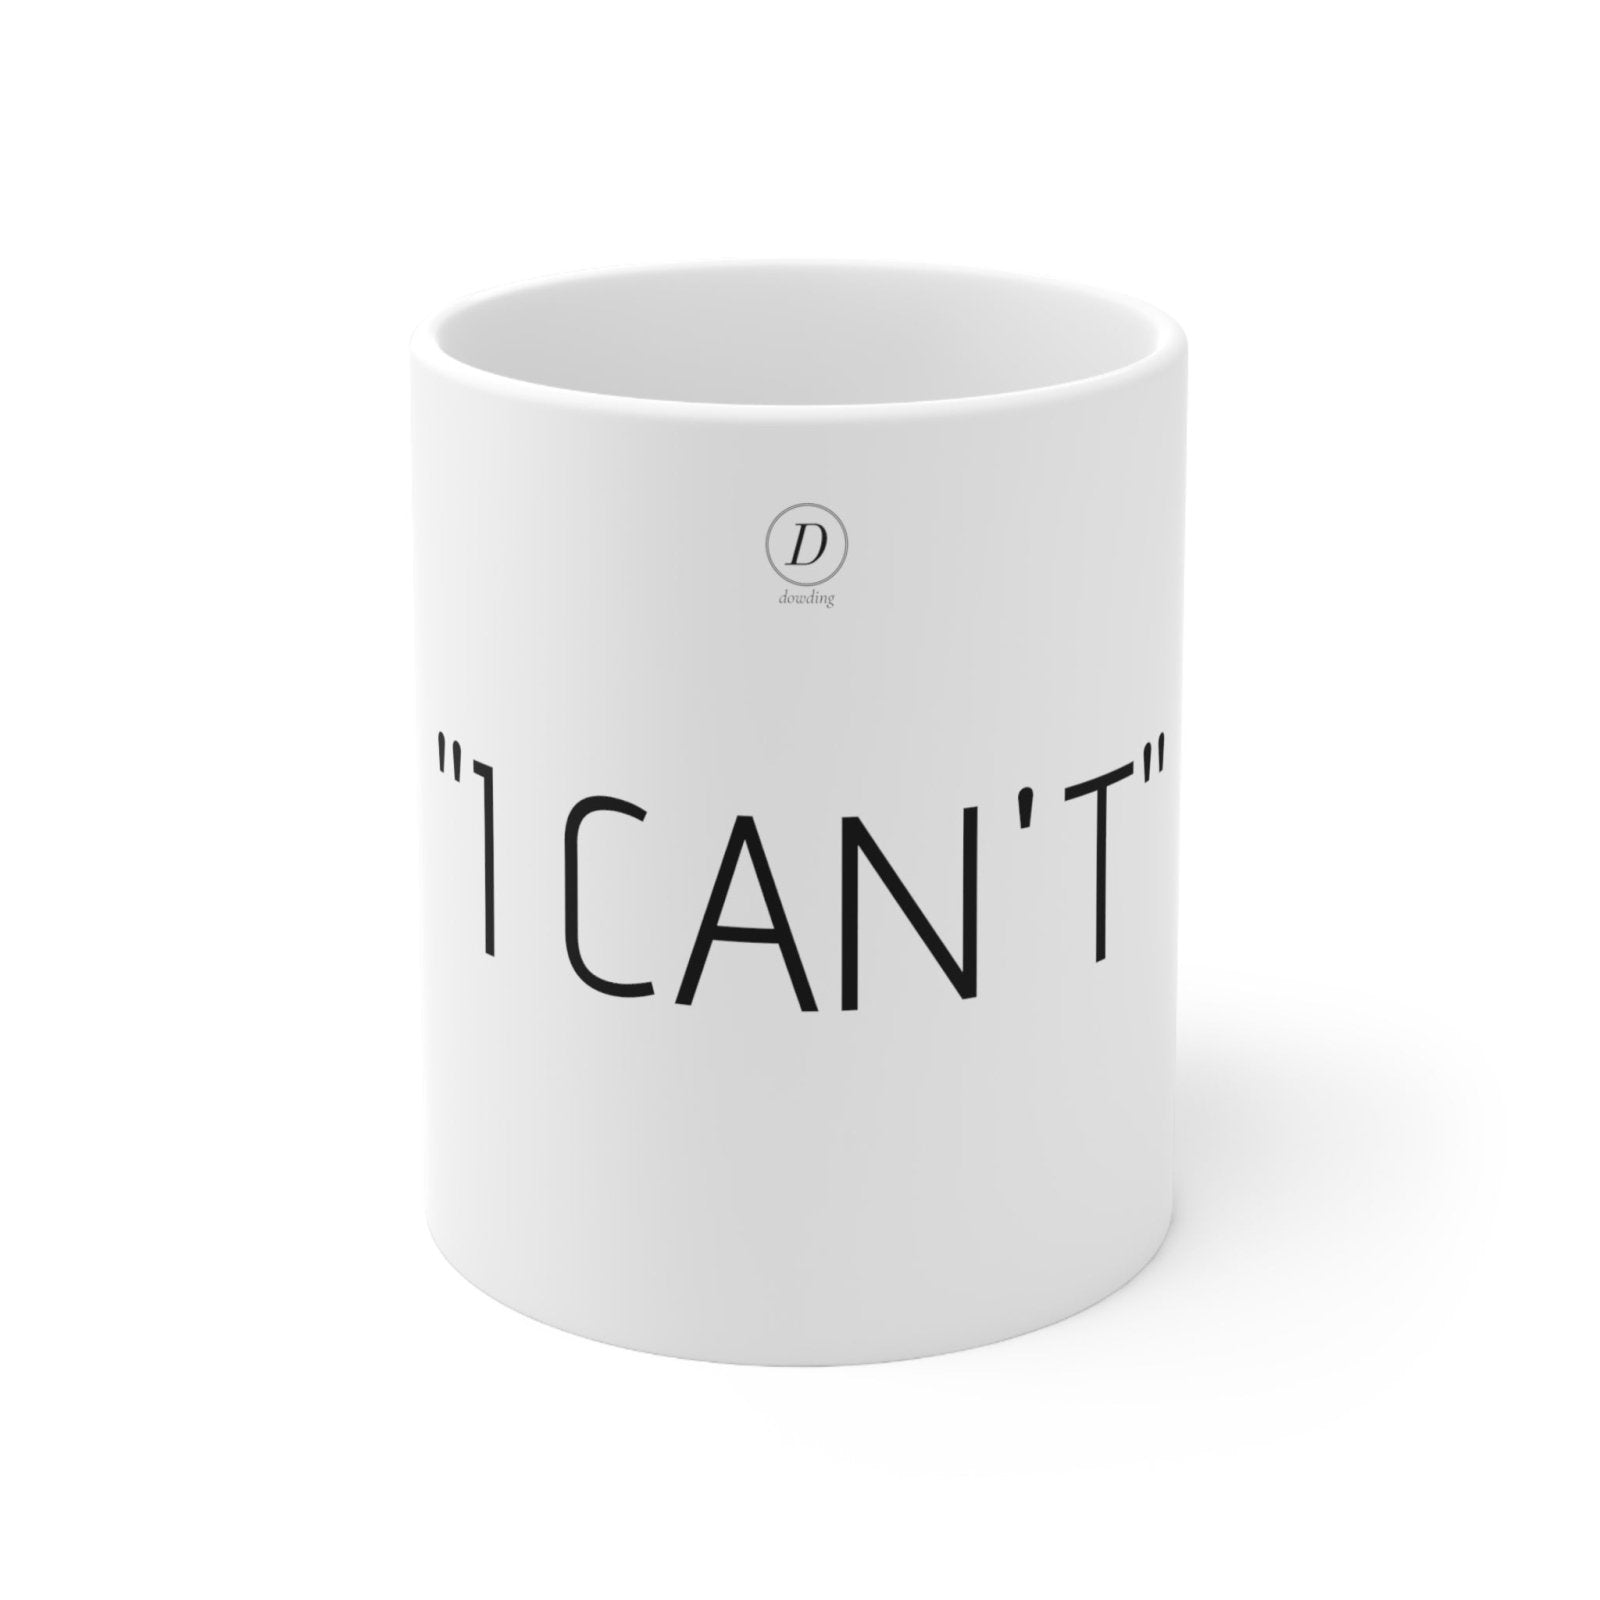 "I CAN'T" Motivational Ceramic Mug 11oz - Dowding